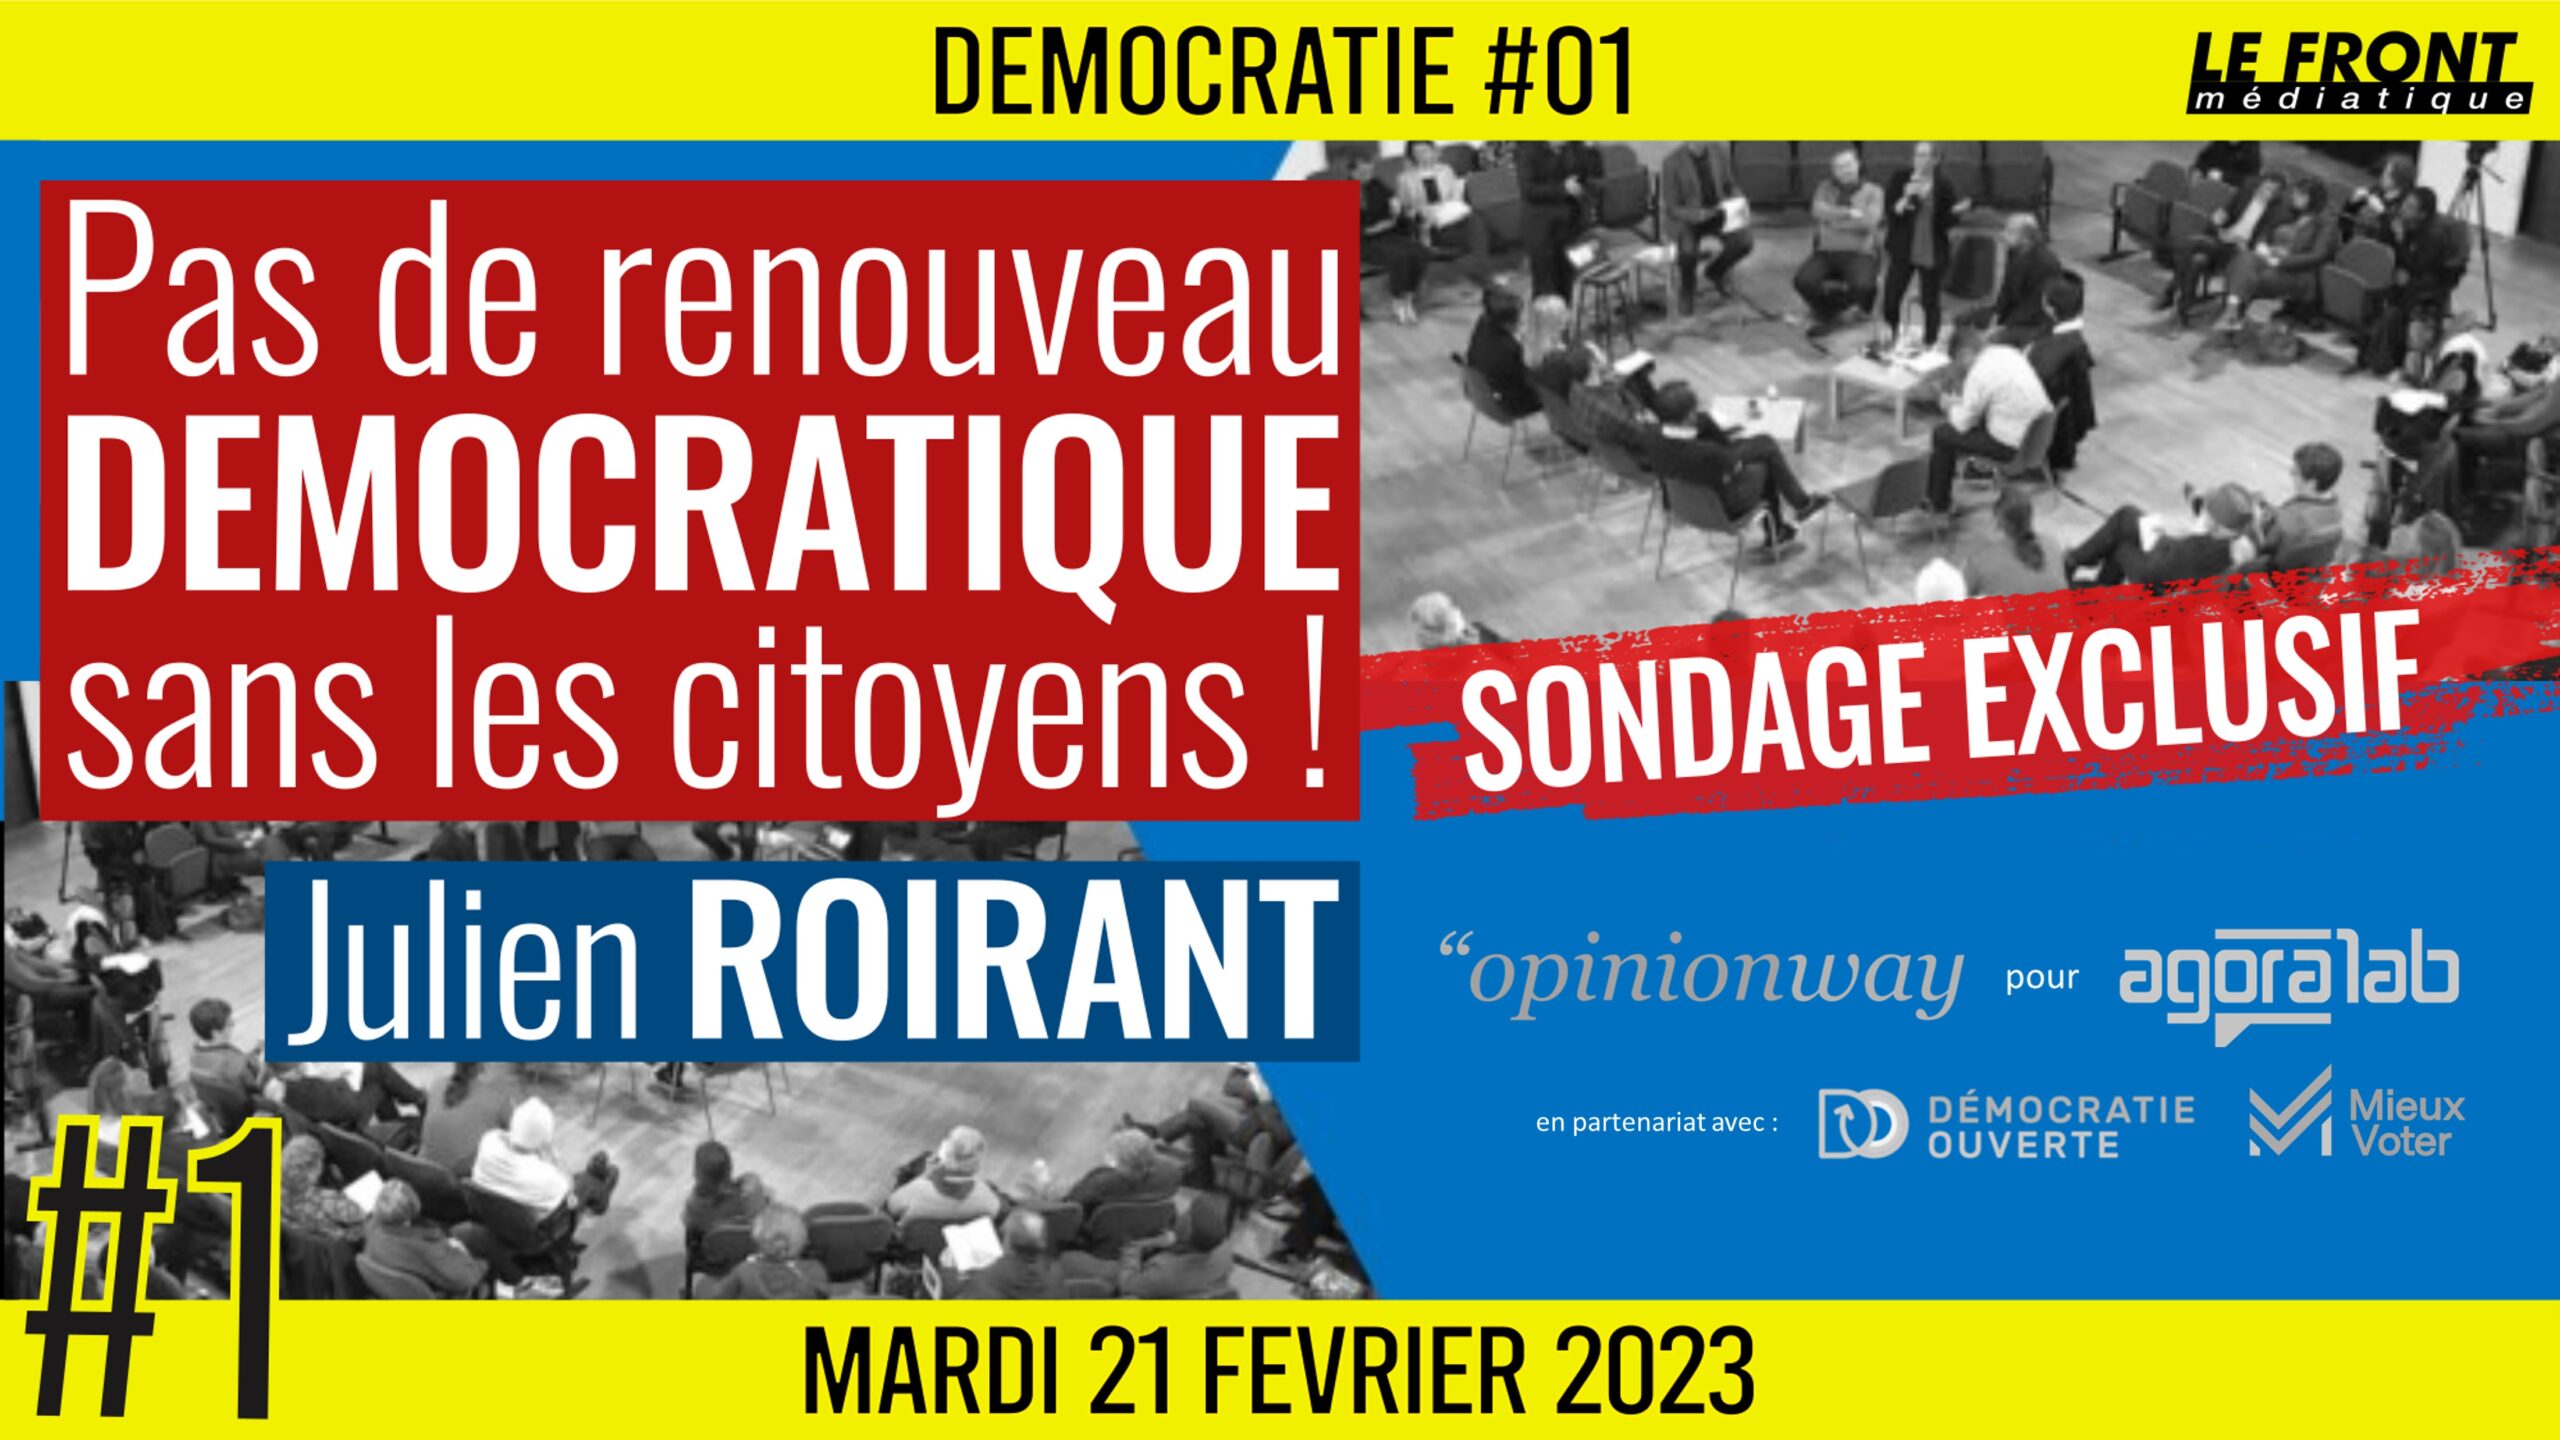 🏛 DÉMOCRATIE #1 🗣️ Julien ROIRANT 📣 SONDAGE EXCLUSIF : Pas de renouveau démocratique sans les citoyens ! 📆 21-02-2023